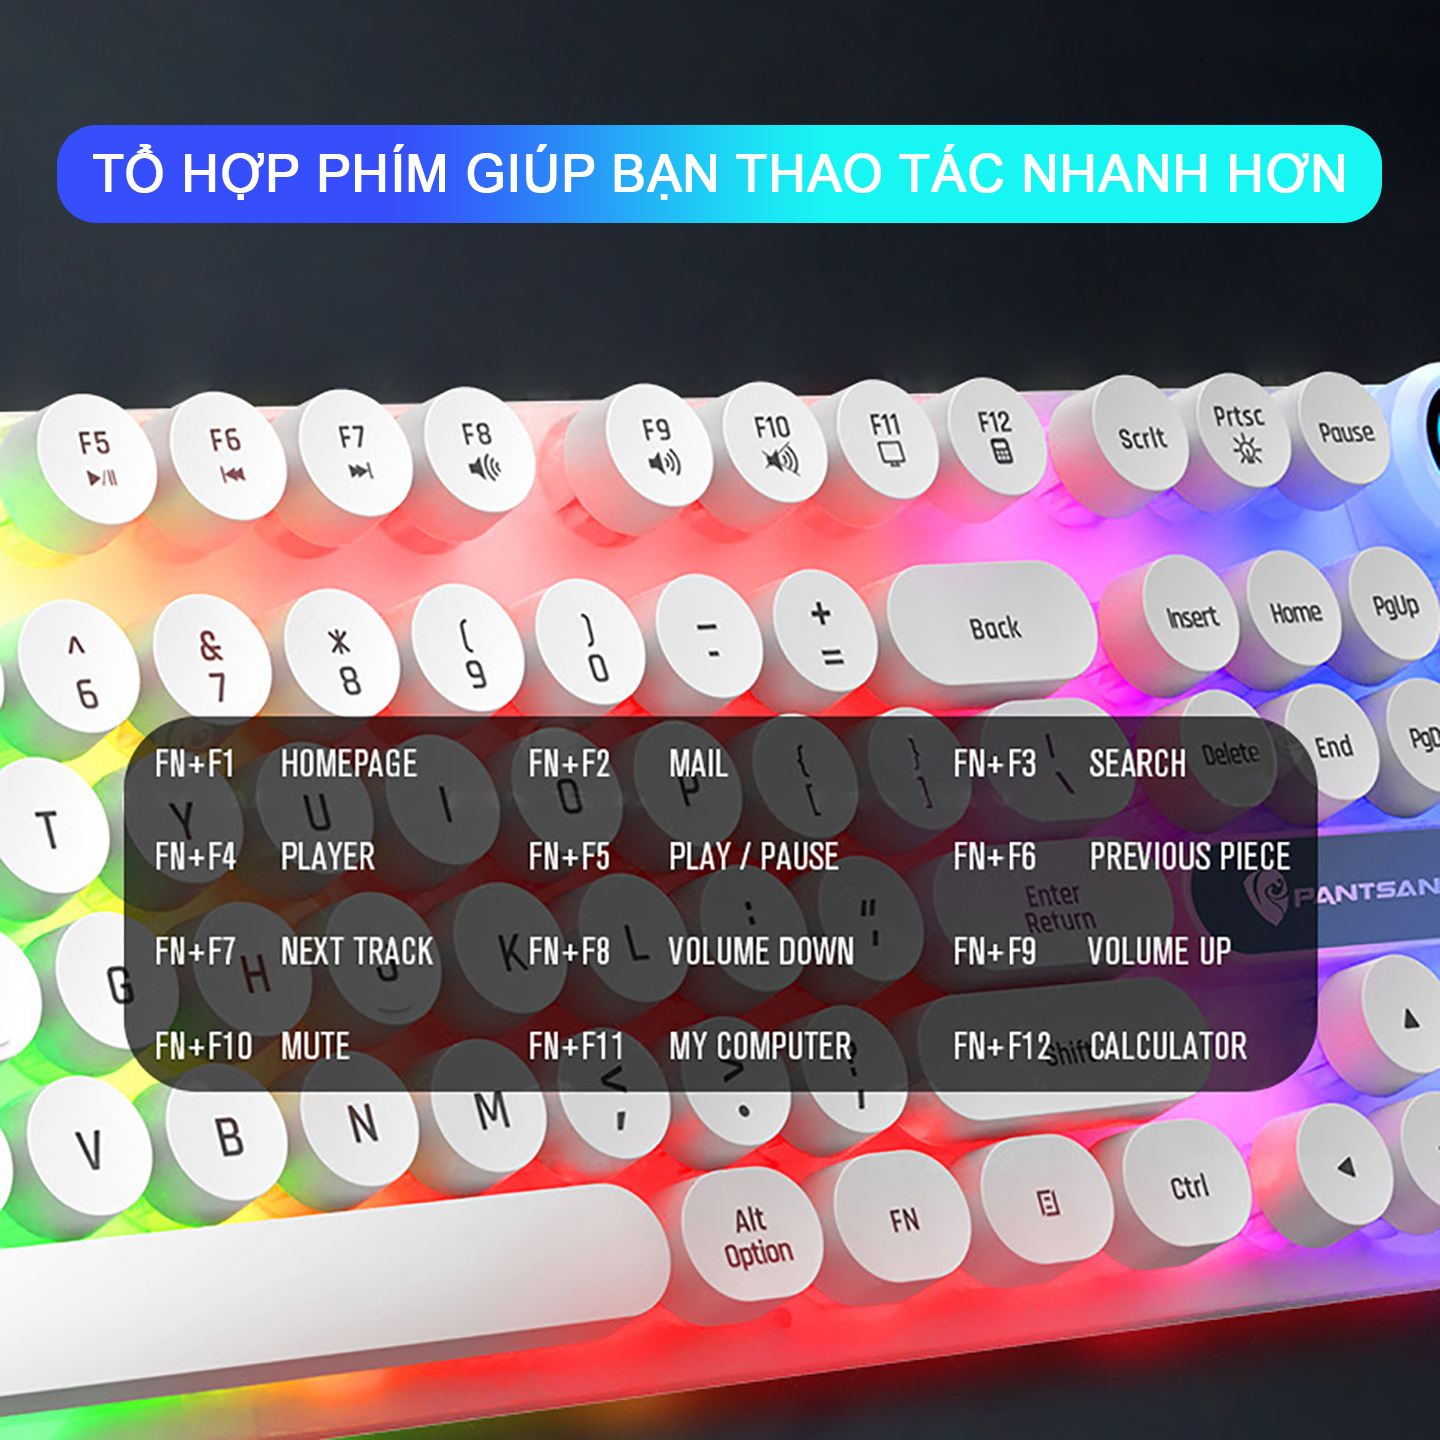 Bàn phím máy tính gaming giả cơ Sidotech SP100 thiết kế bàn phím nút tròn có Led RGB, cấu tạo công thái học cho cảm giác gõ chân thực, chống nước tiêu chuẩn, chuyên chơi game và làm việc văn phòng - Hàng chính hãng